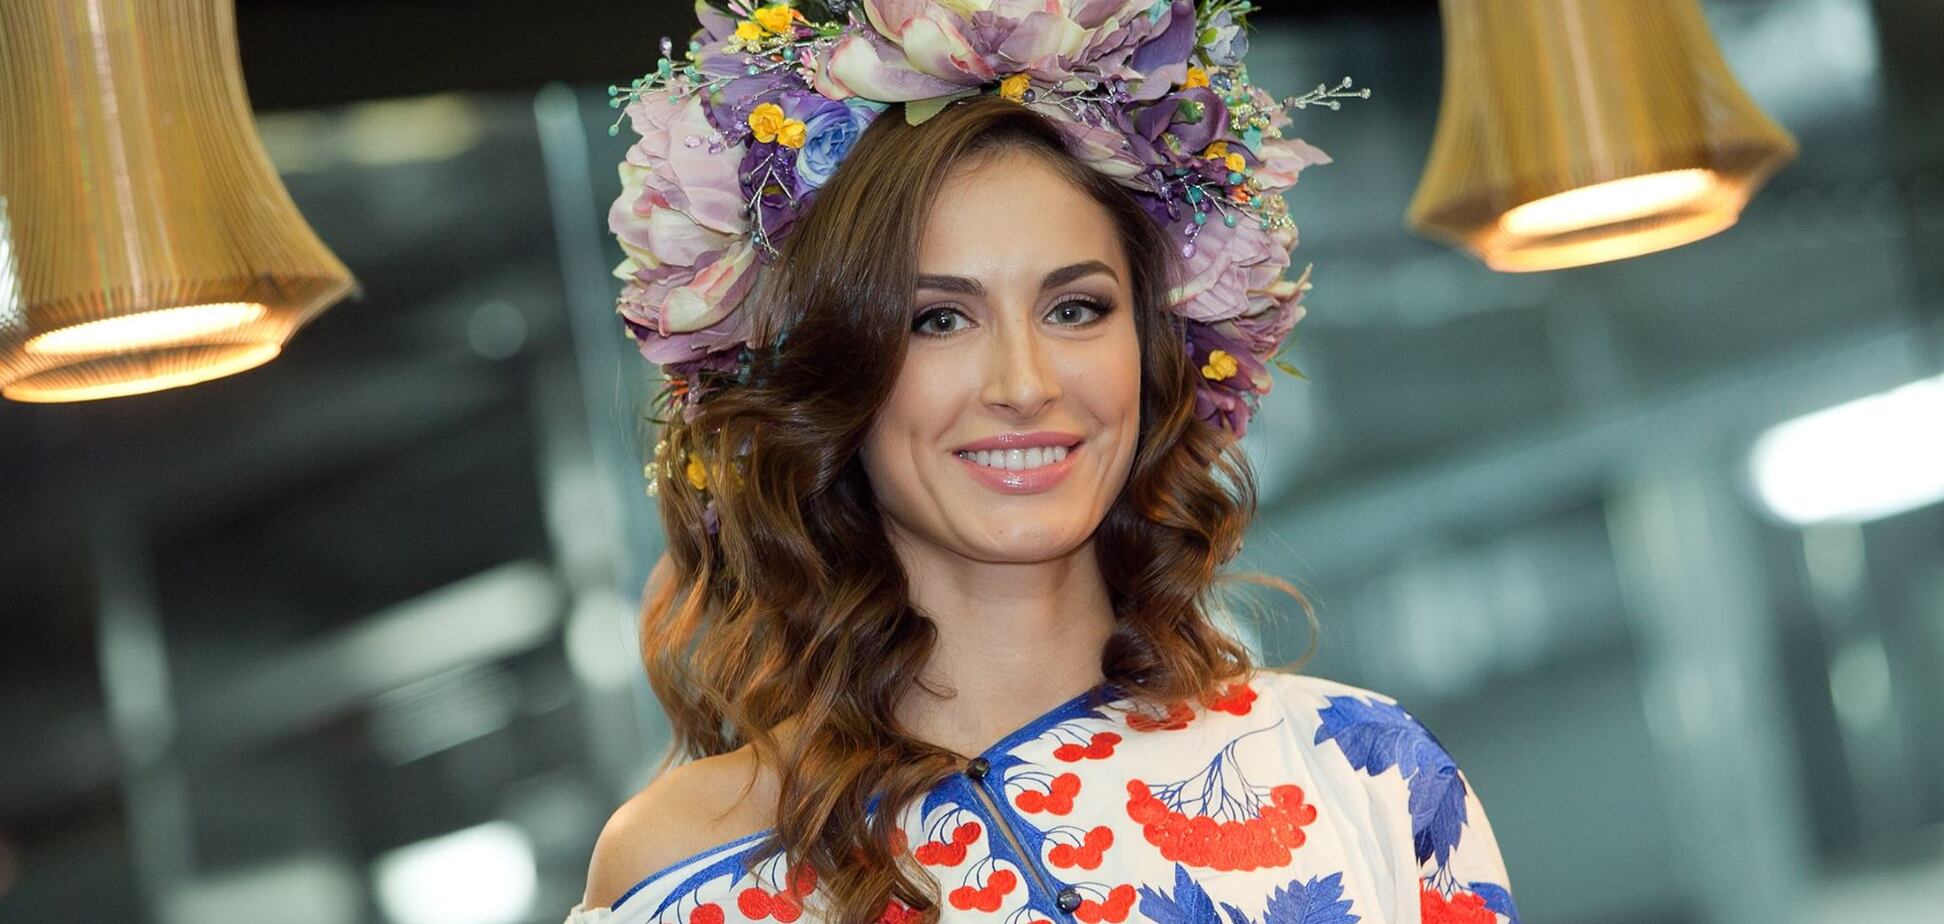 Україна на світових конкурсах краси: в мережі показали вишукані наряди конкурсанток